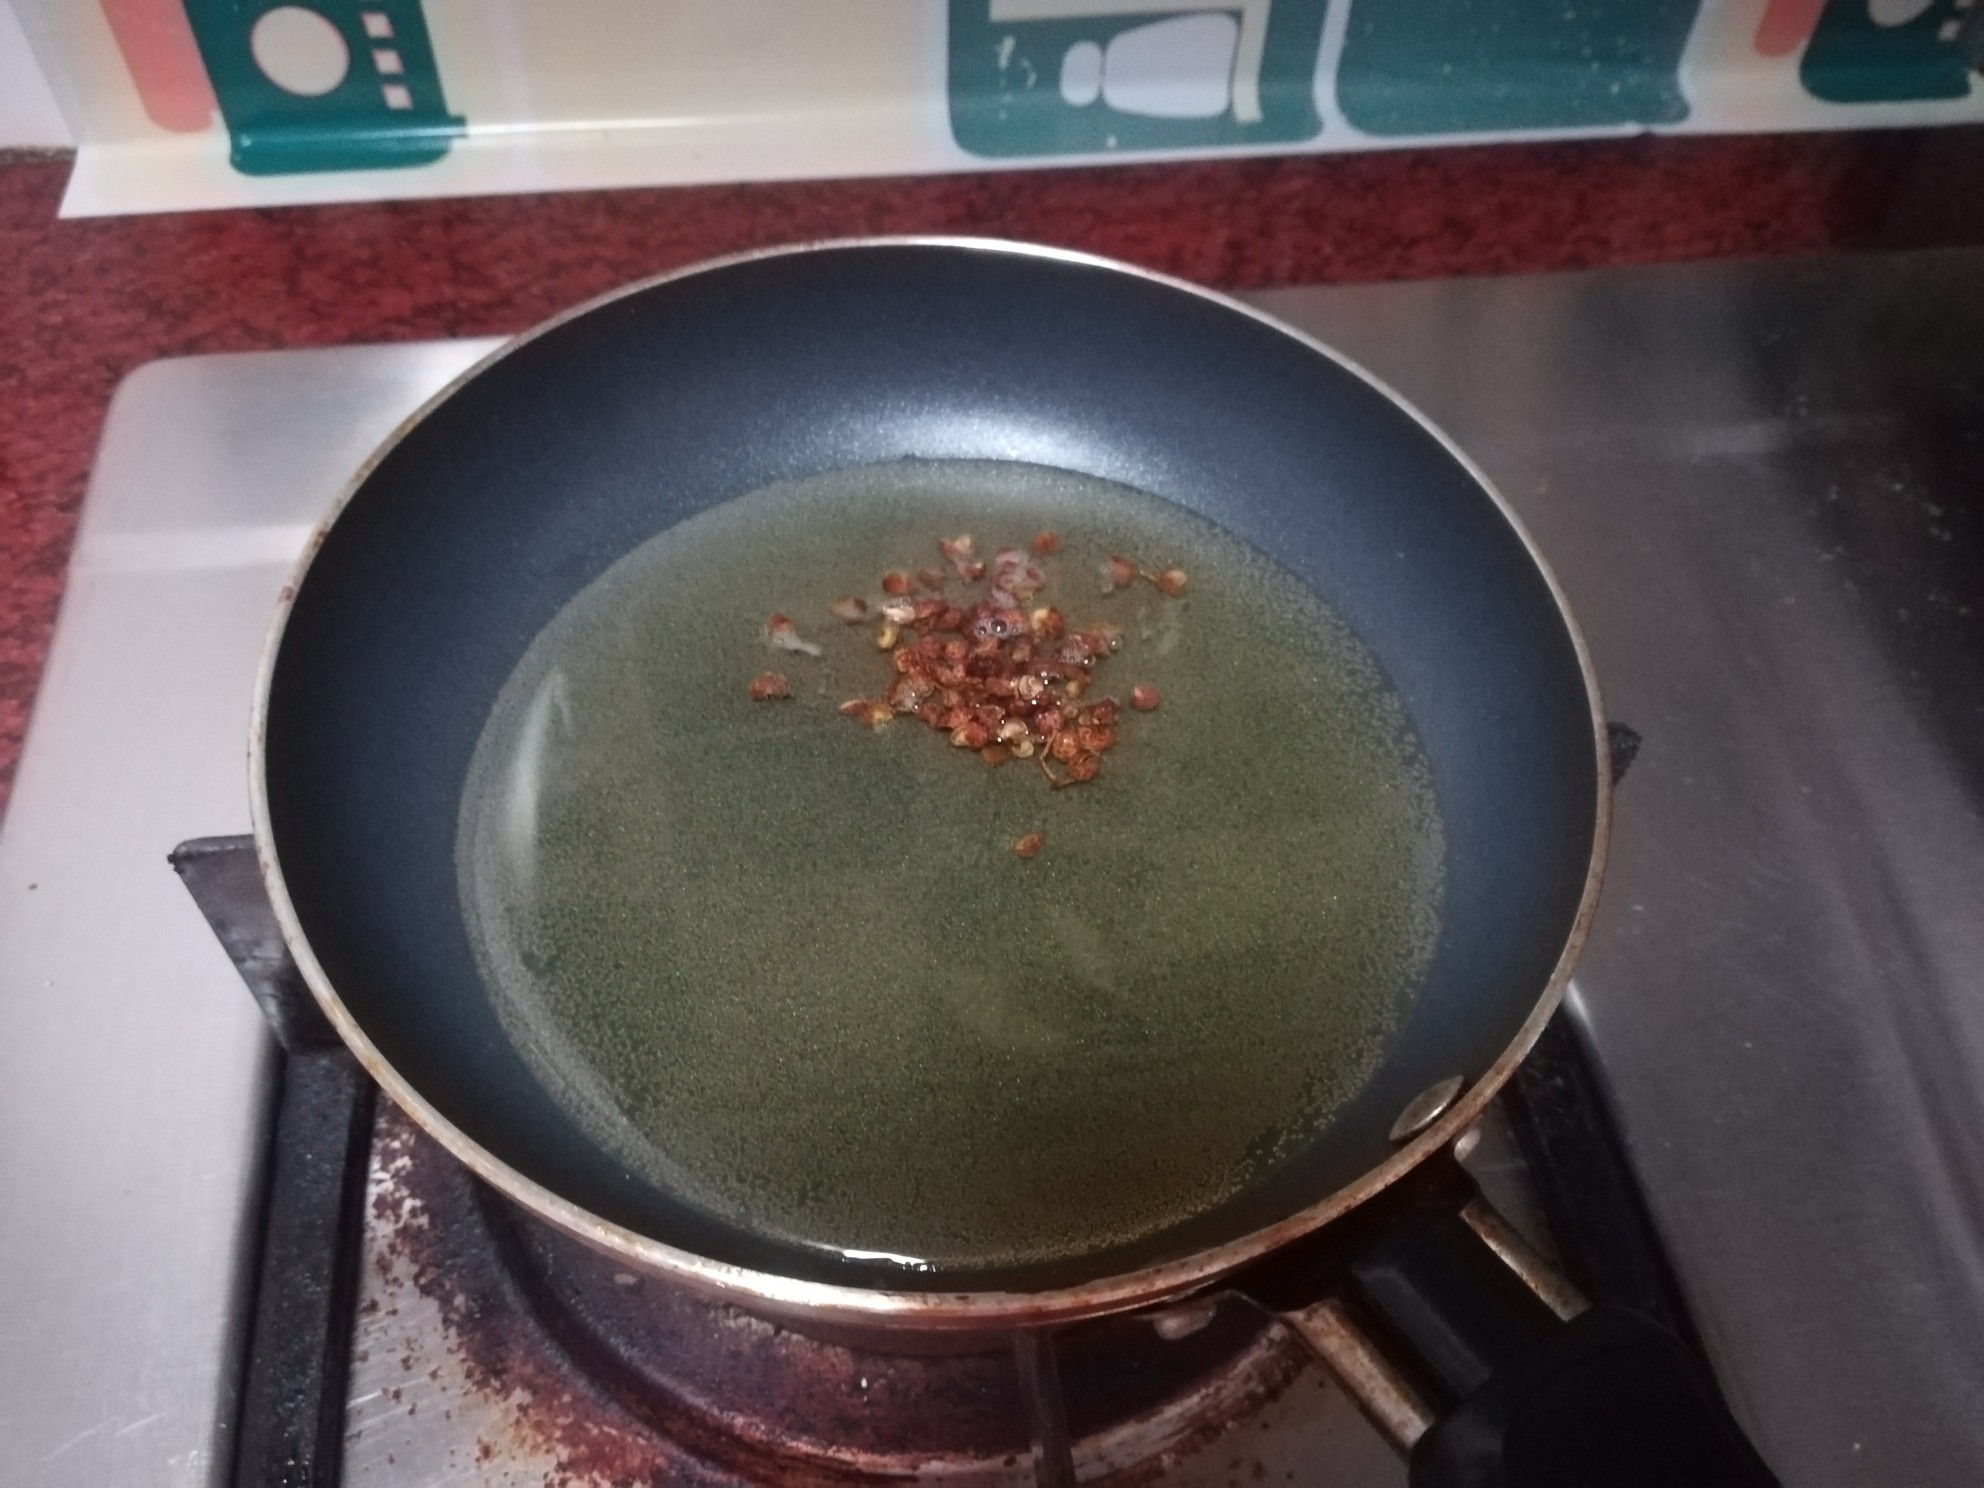 Mixed Green Radish recipe